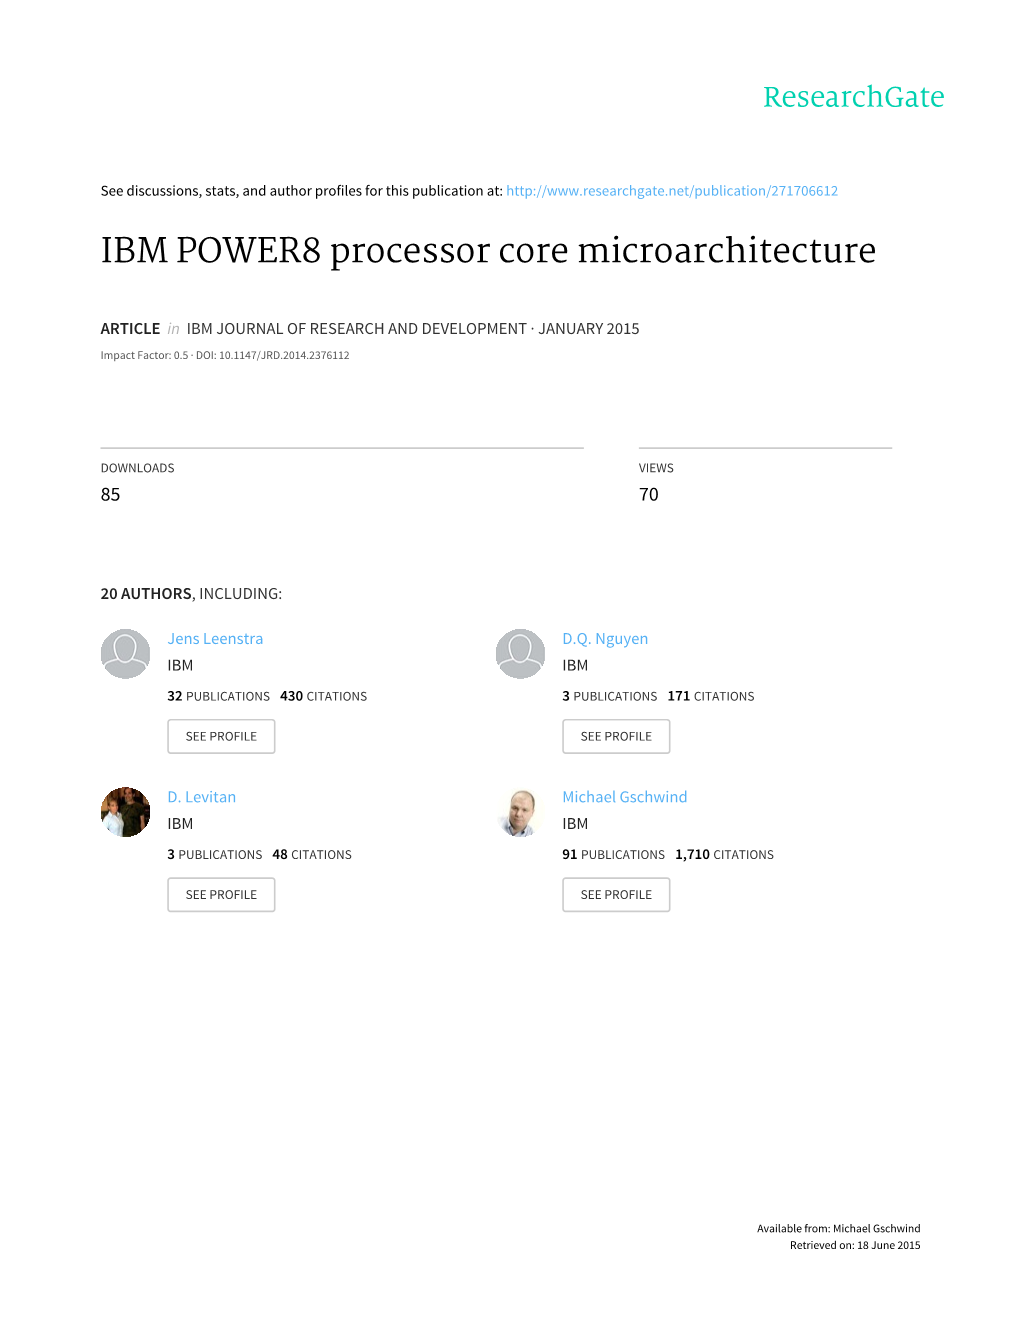 IBM POWER8 Processor Core Microarchitecture